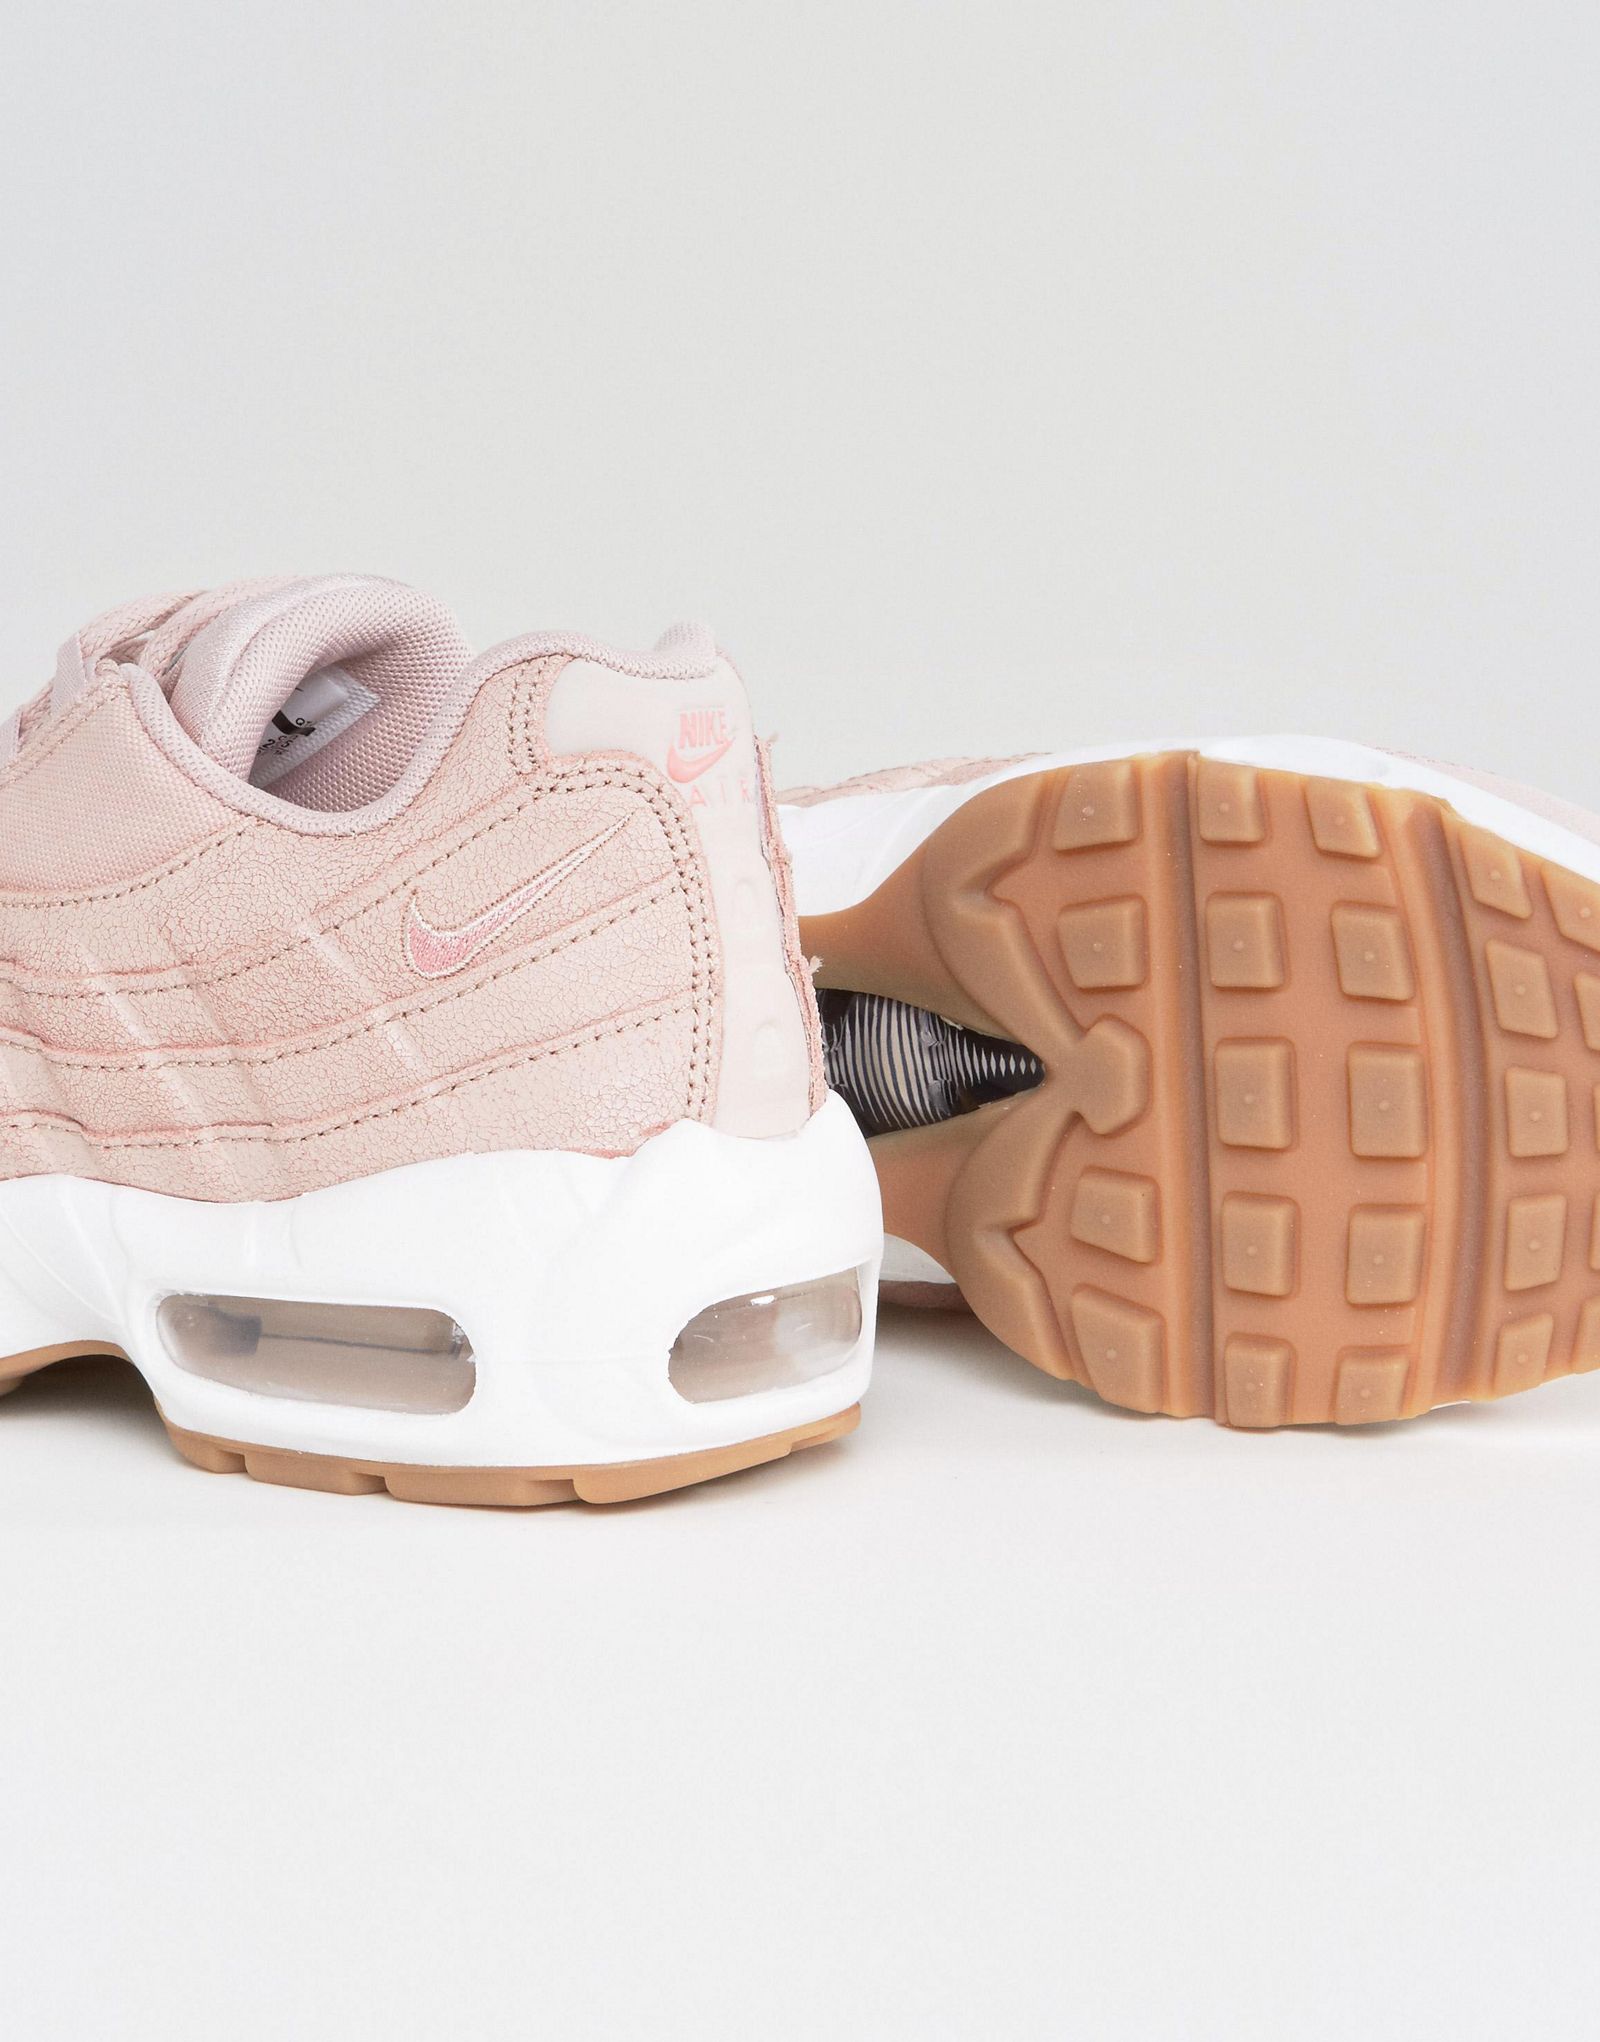 Nike Air Max 95 Premium Sneakers In Pink